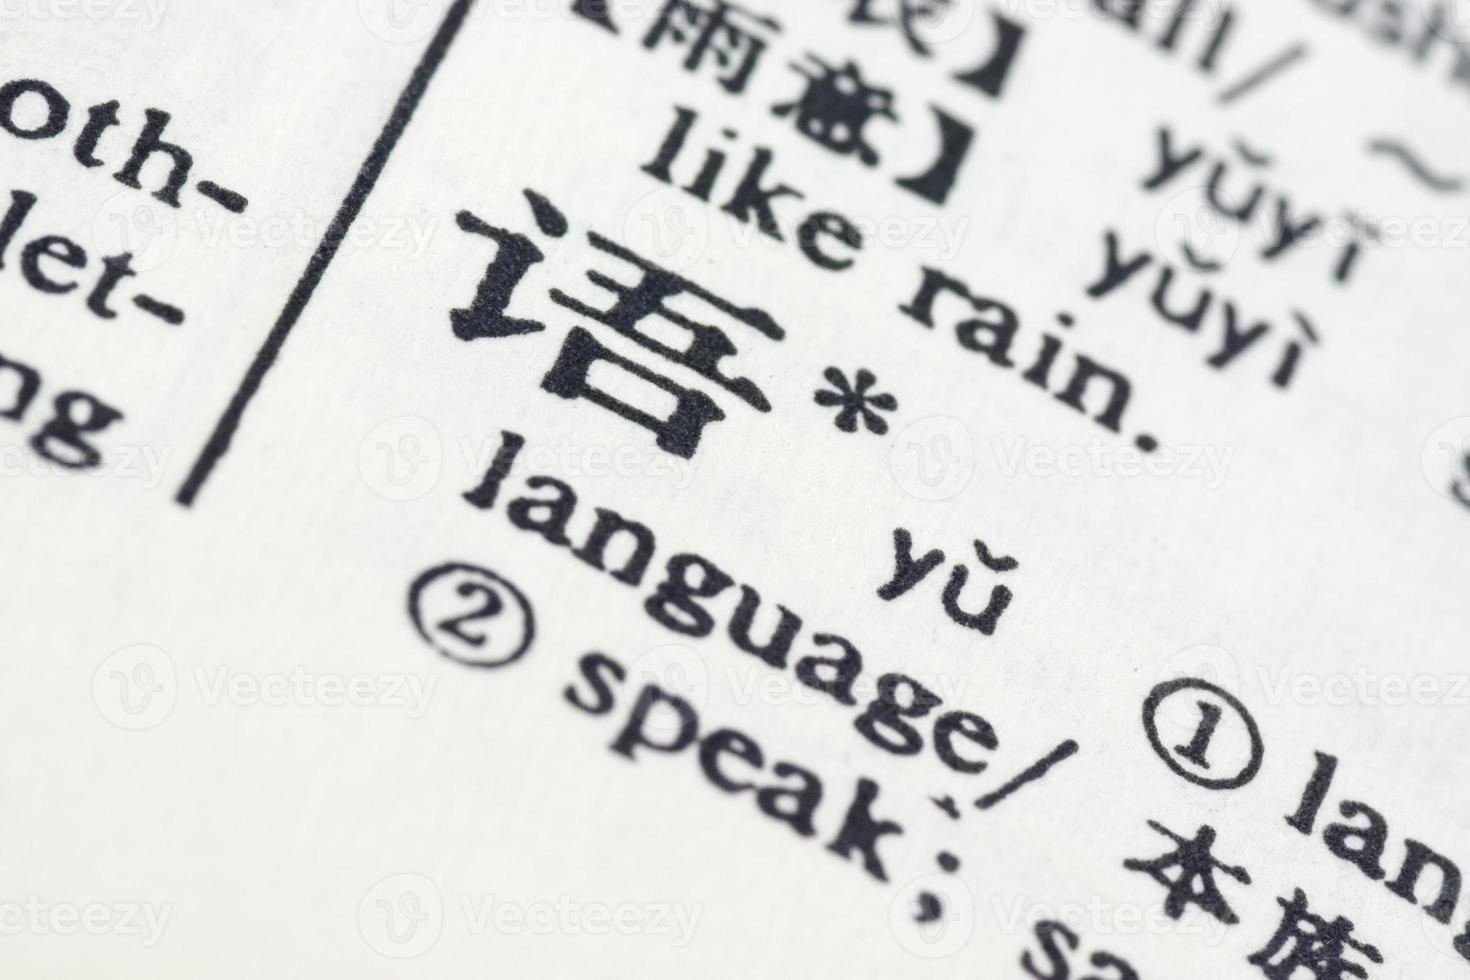 langue écrite en chinois photo